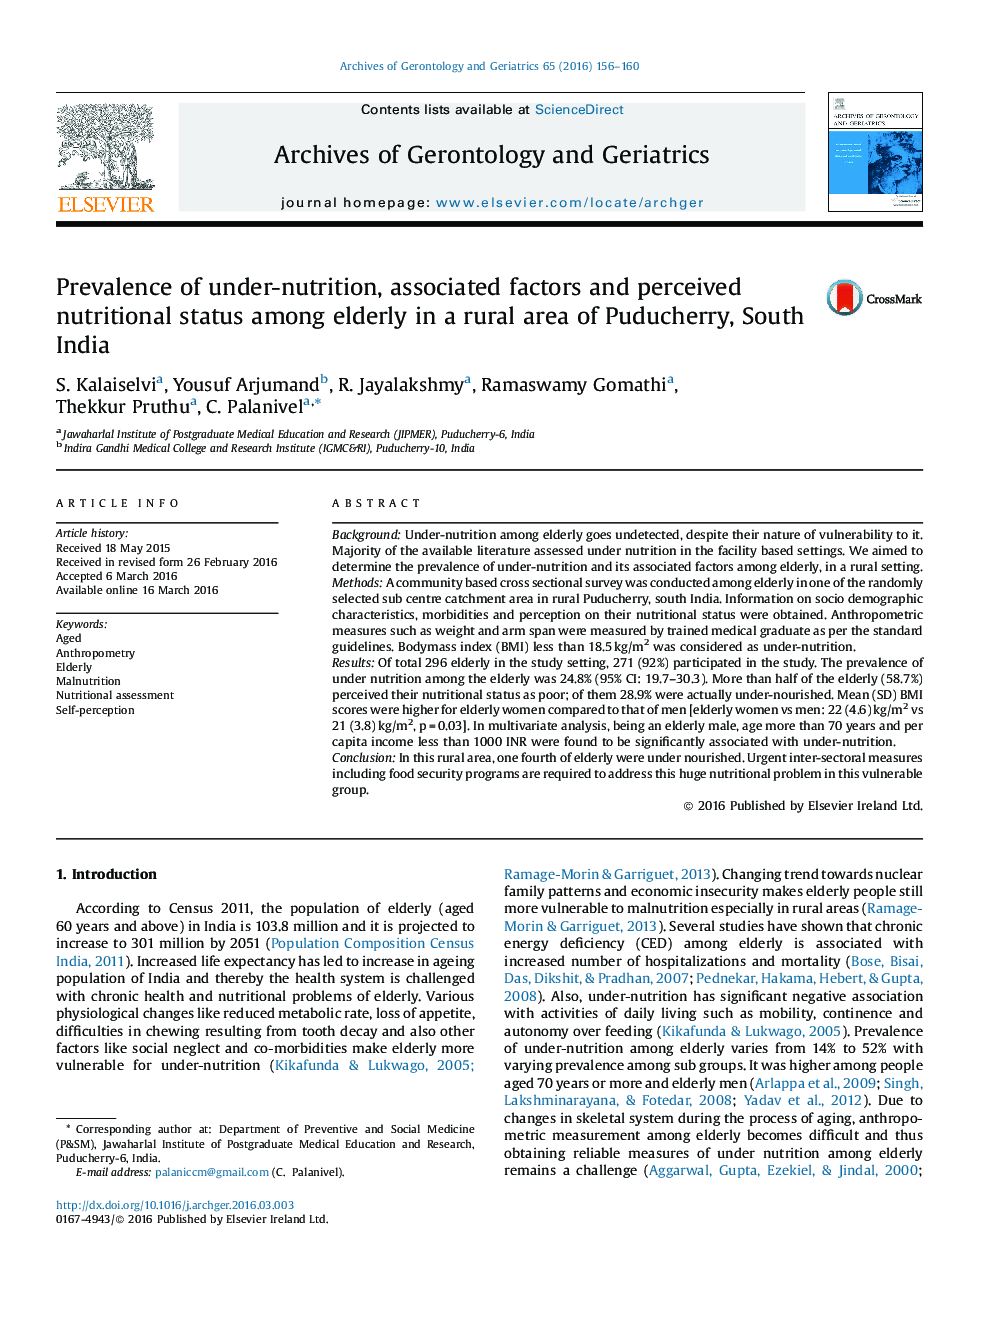 شیوع تحت تغذیه، عوامل مرتبط و وضعیت ادراک شده تغذیه سالمندان در یک منطقه روستایی از پودوچری در جنوب هند